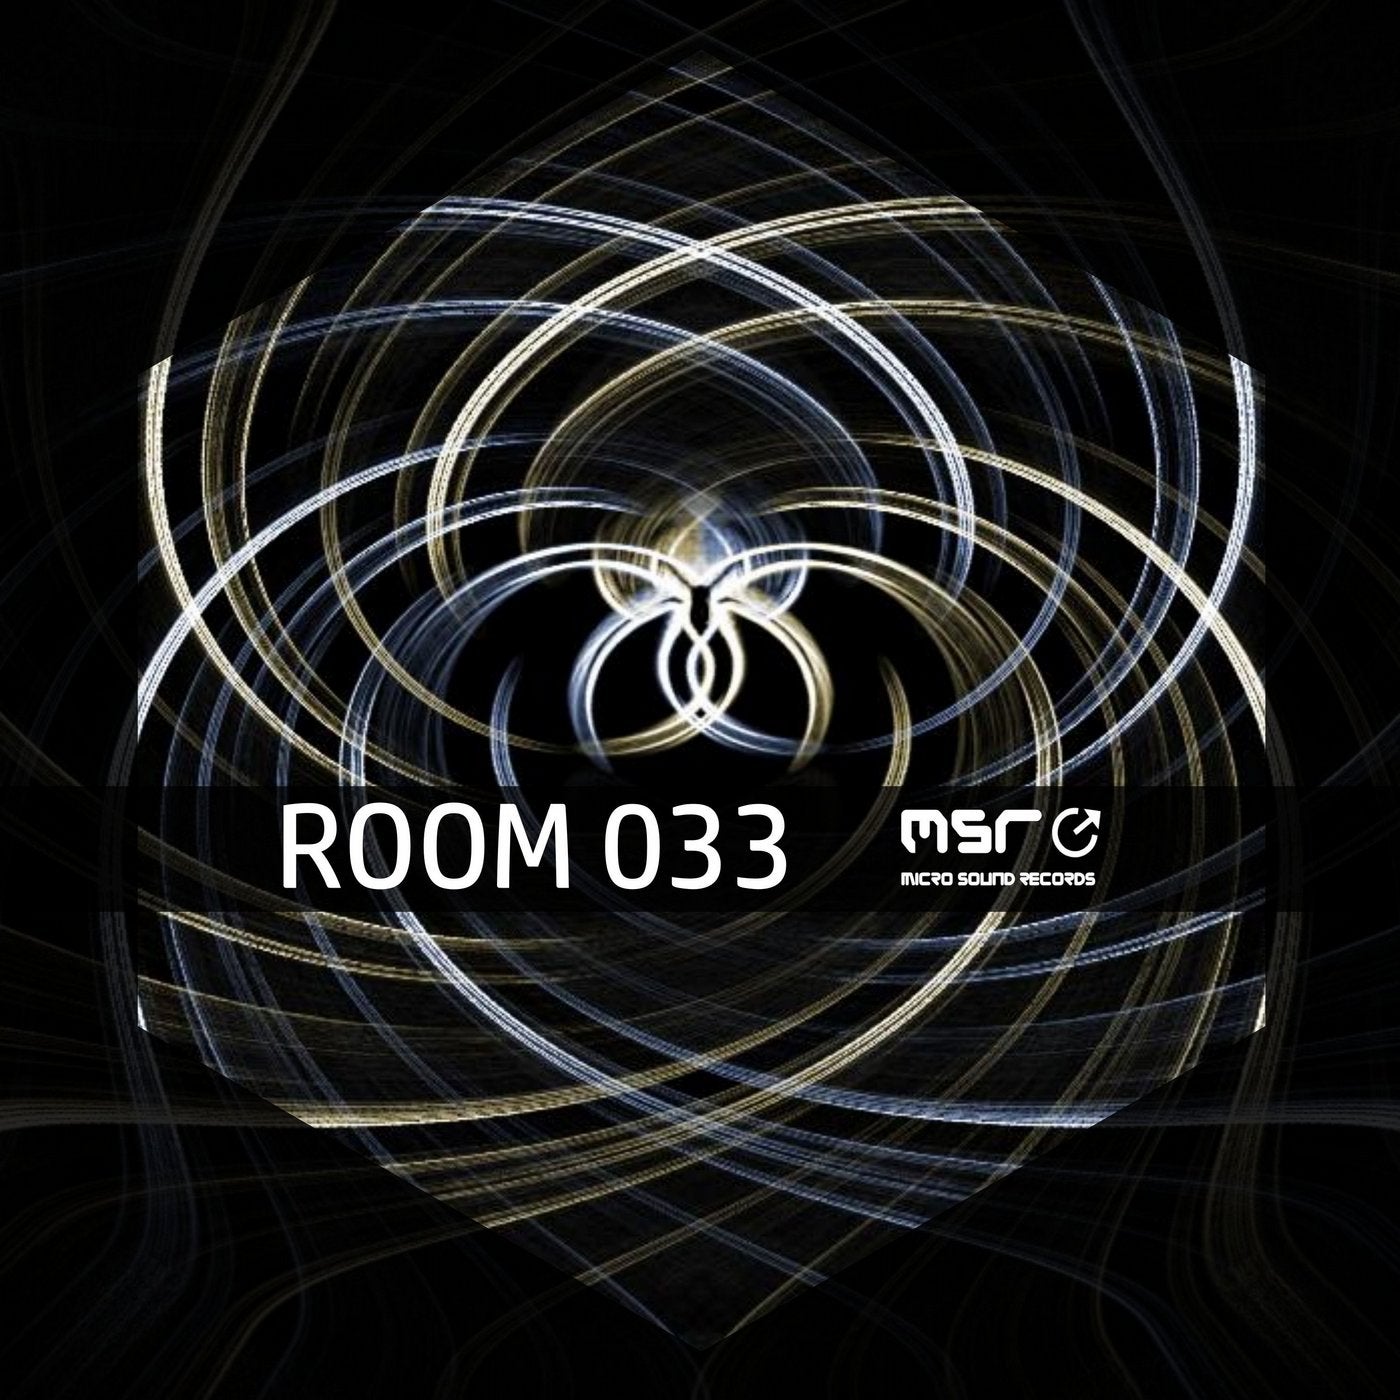 Room 033